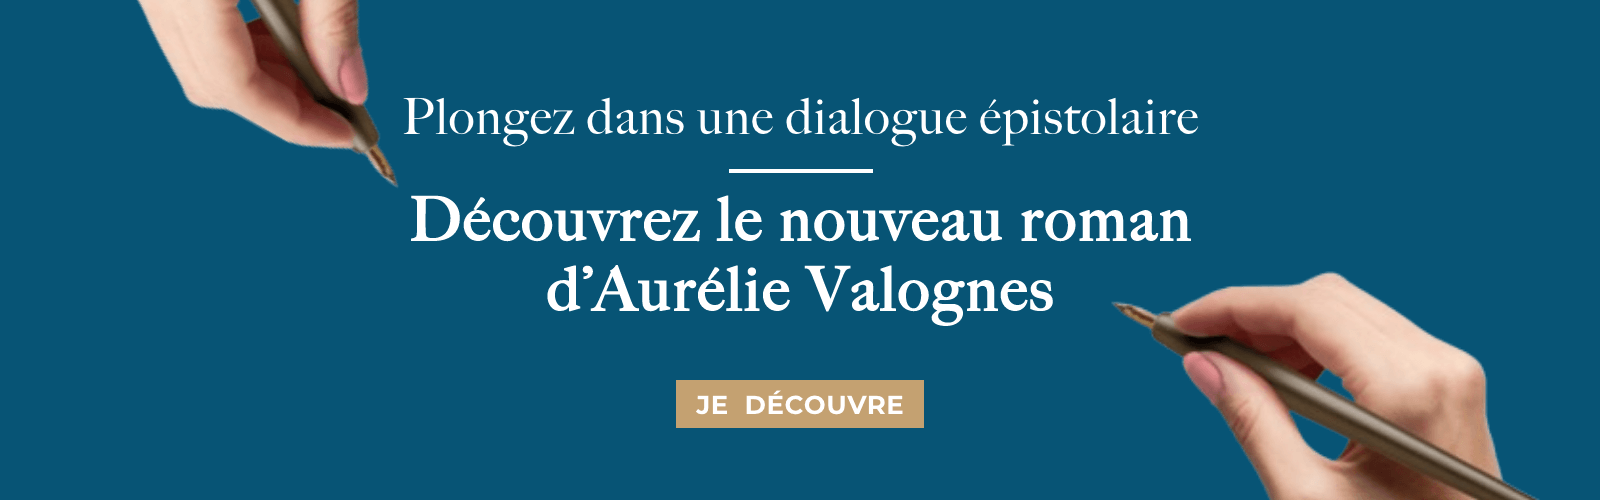 Découvrez le nouveau roman d'Aurélie Valognes